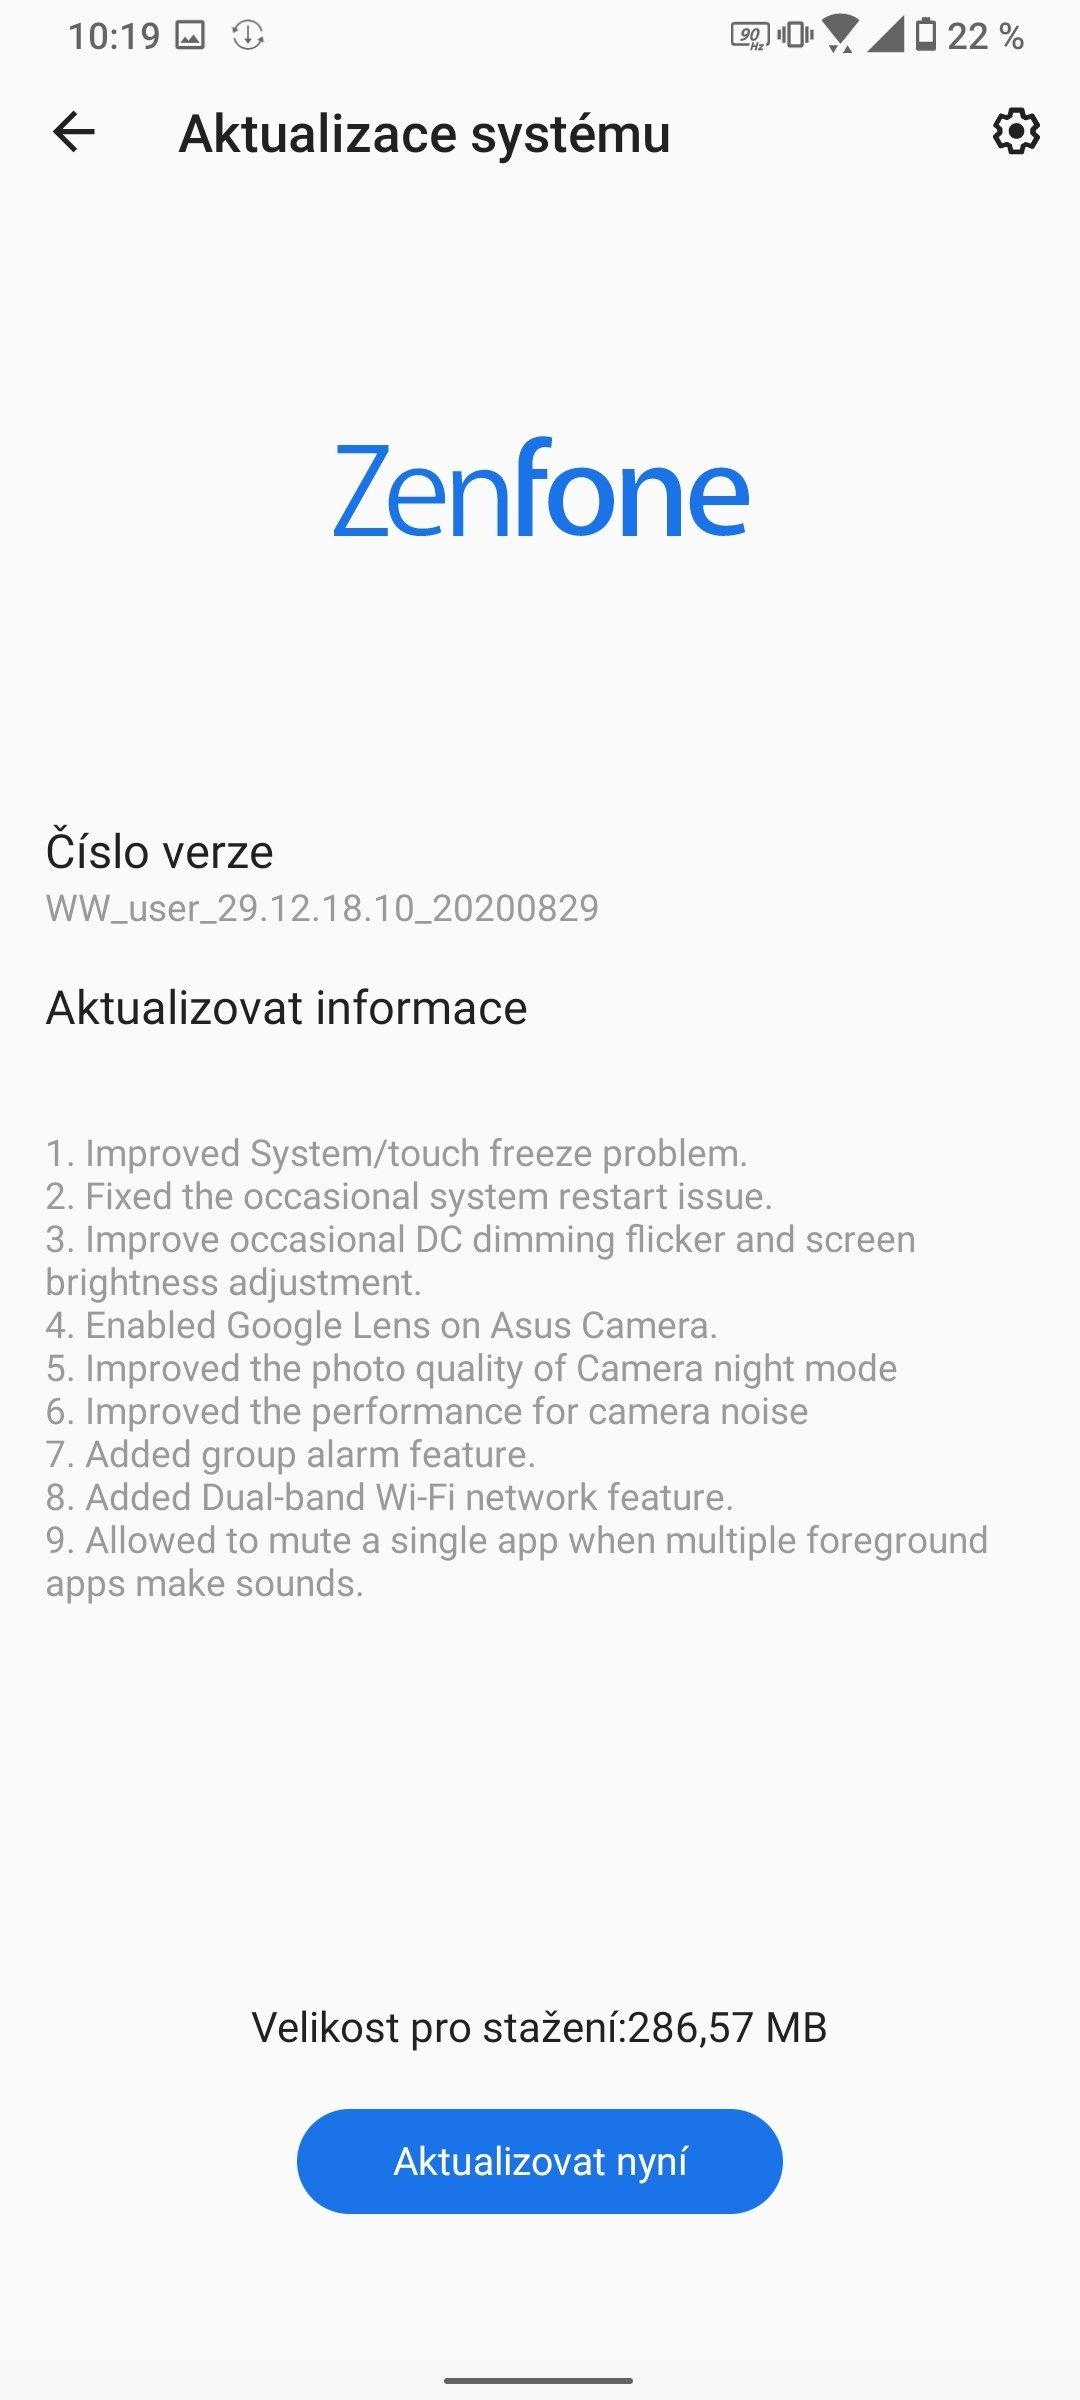 ASUS ZenFone 7 Pro